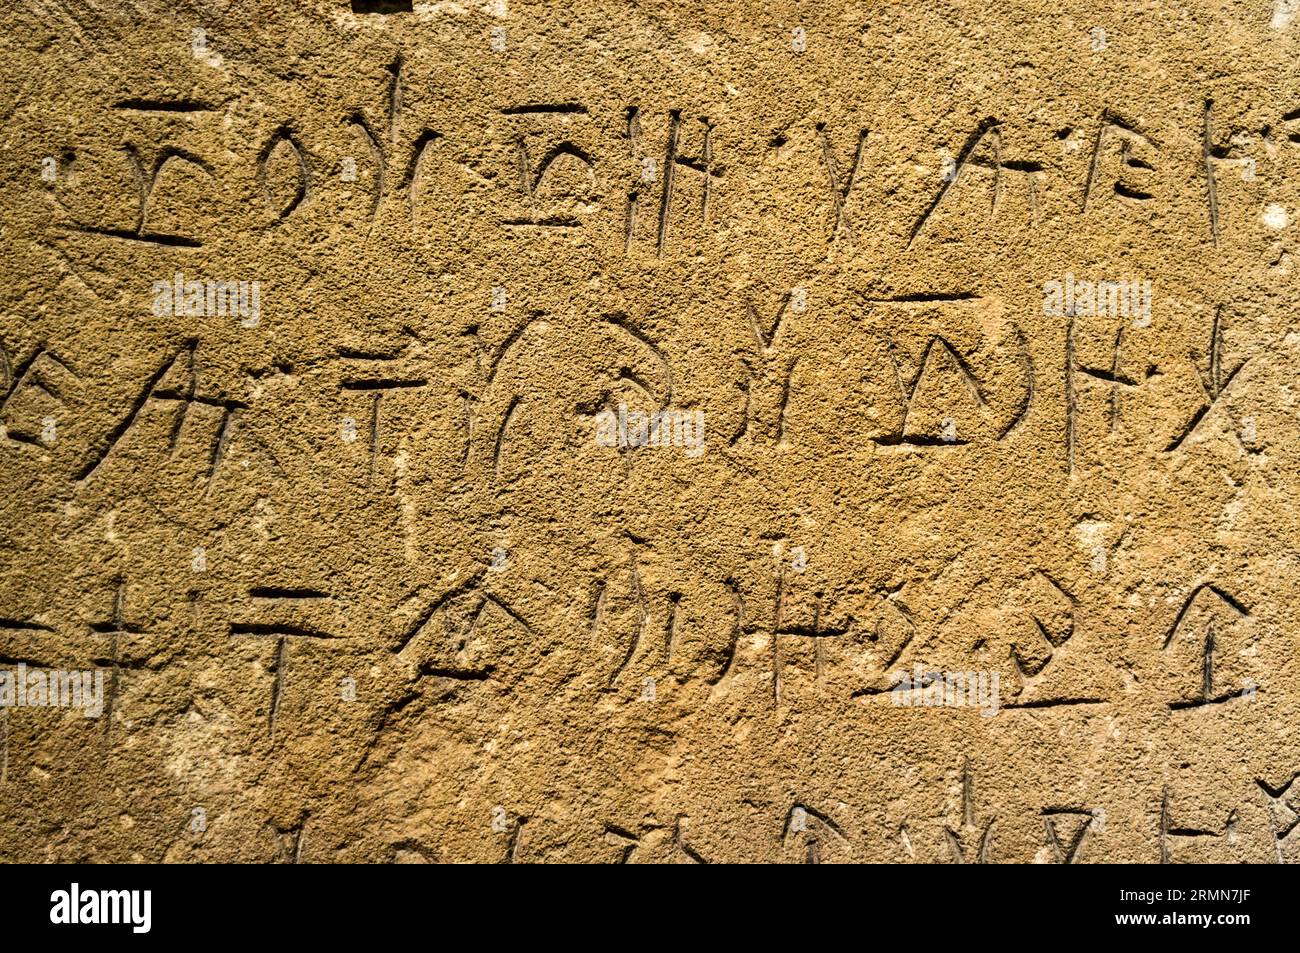 Un blocco di pietra calcarea, probabilmente proveniente da Amathous a Cipro. Con caratteri Eteocypriot non decifrati. 500-300 A.C. Ashmolean Museum, Oxford. Foto Stock